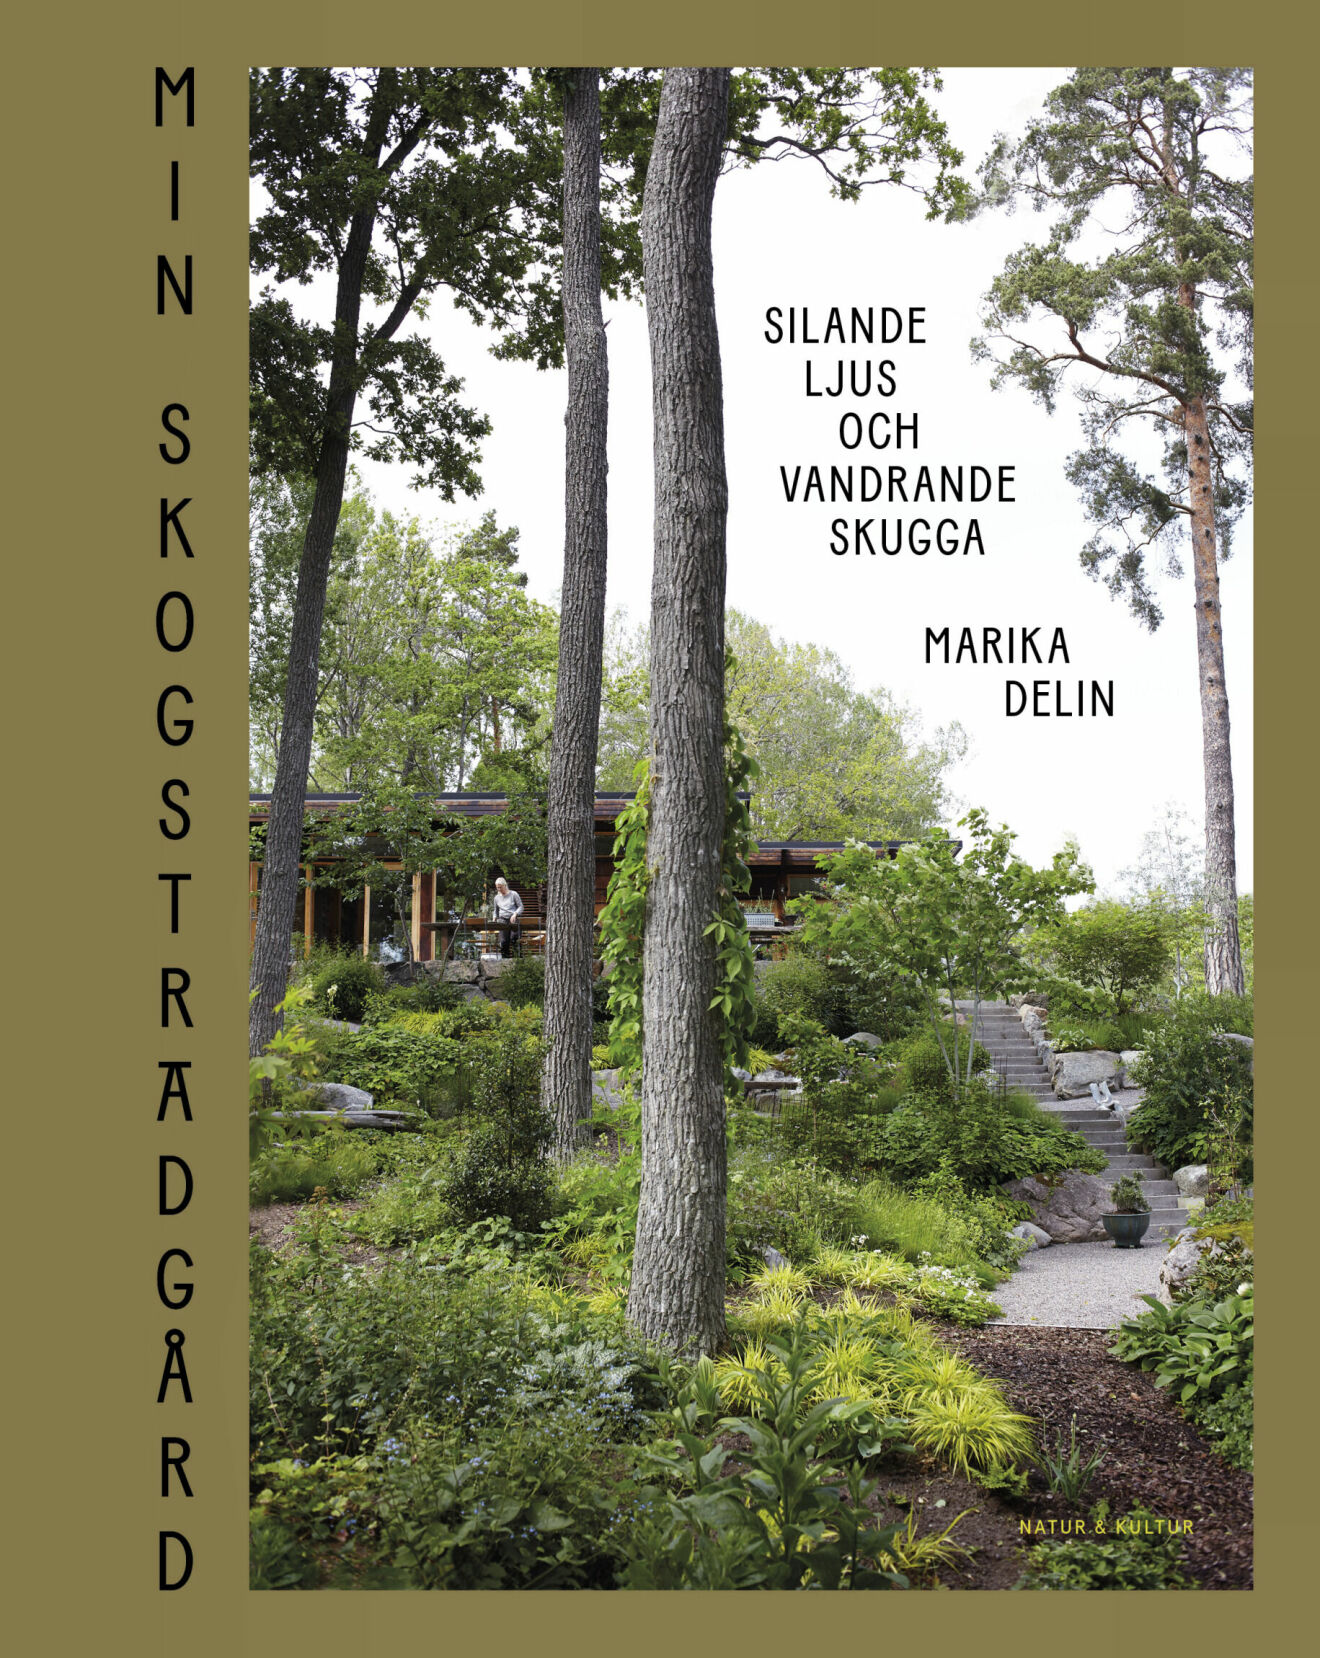 Marikas bok Min skogsträdgård – Silande ljus och vandrande skugga med foto Karin Björkquist, Natur och Kultur.